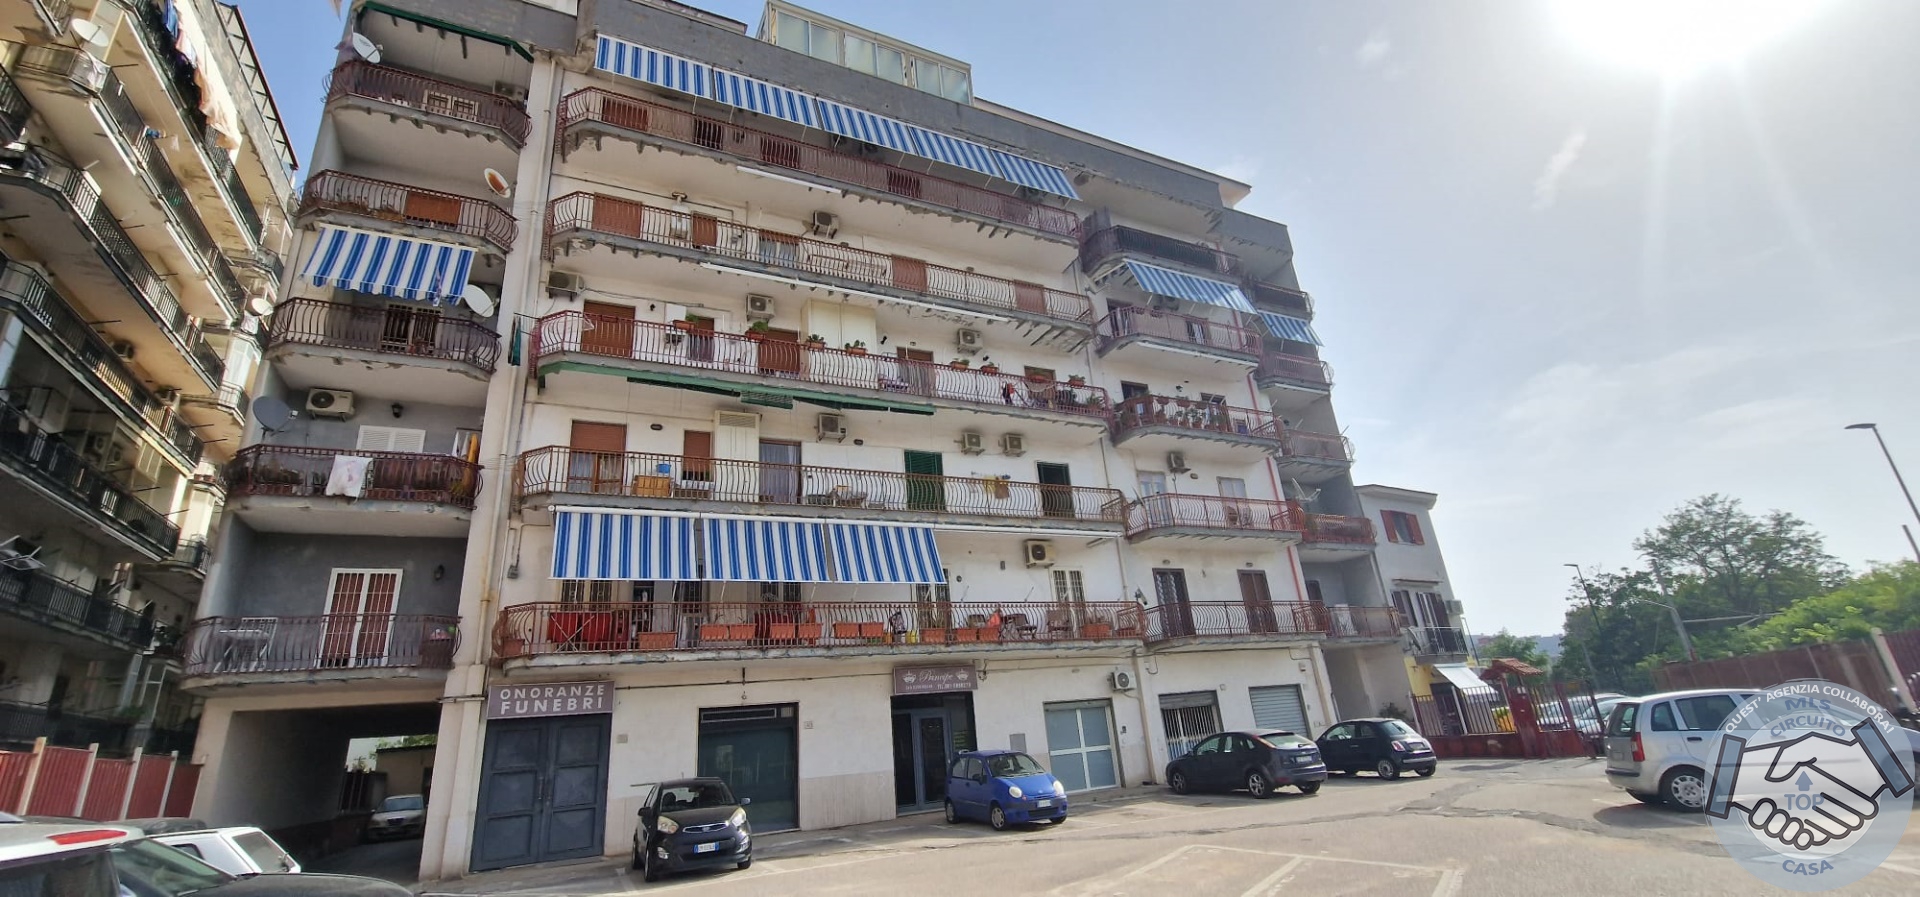 Appartamento in vendita a Napoli, 3 locali, prezzo € 180.000 | PortaleAgenzieImmobiliari.it